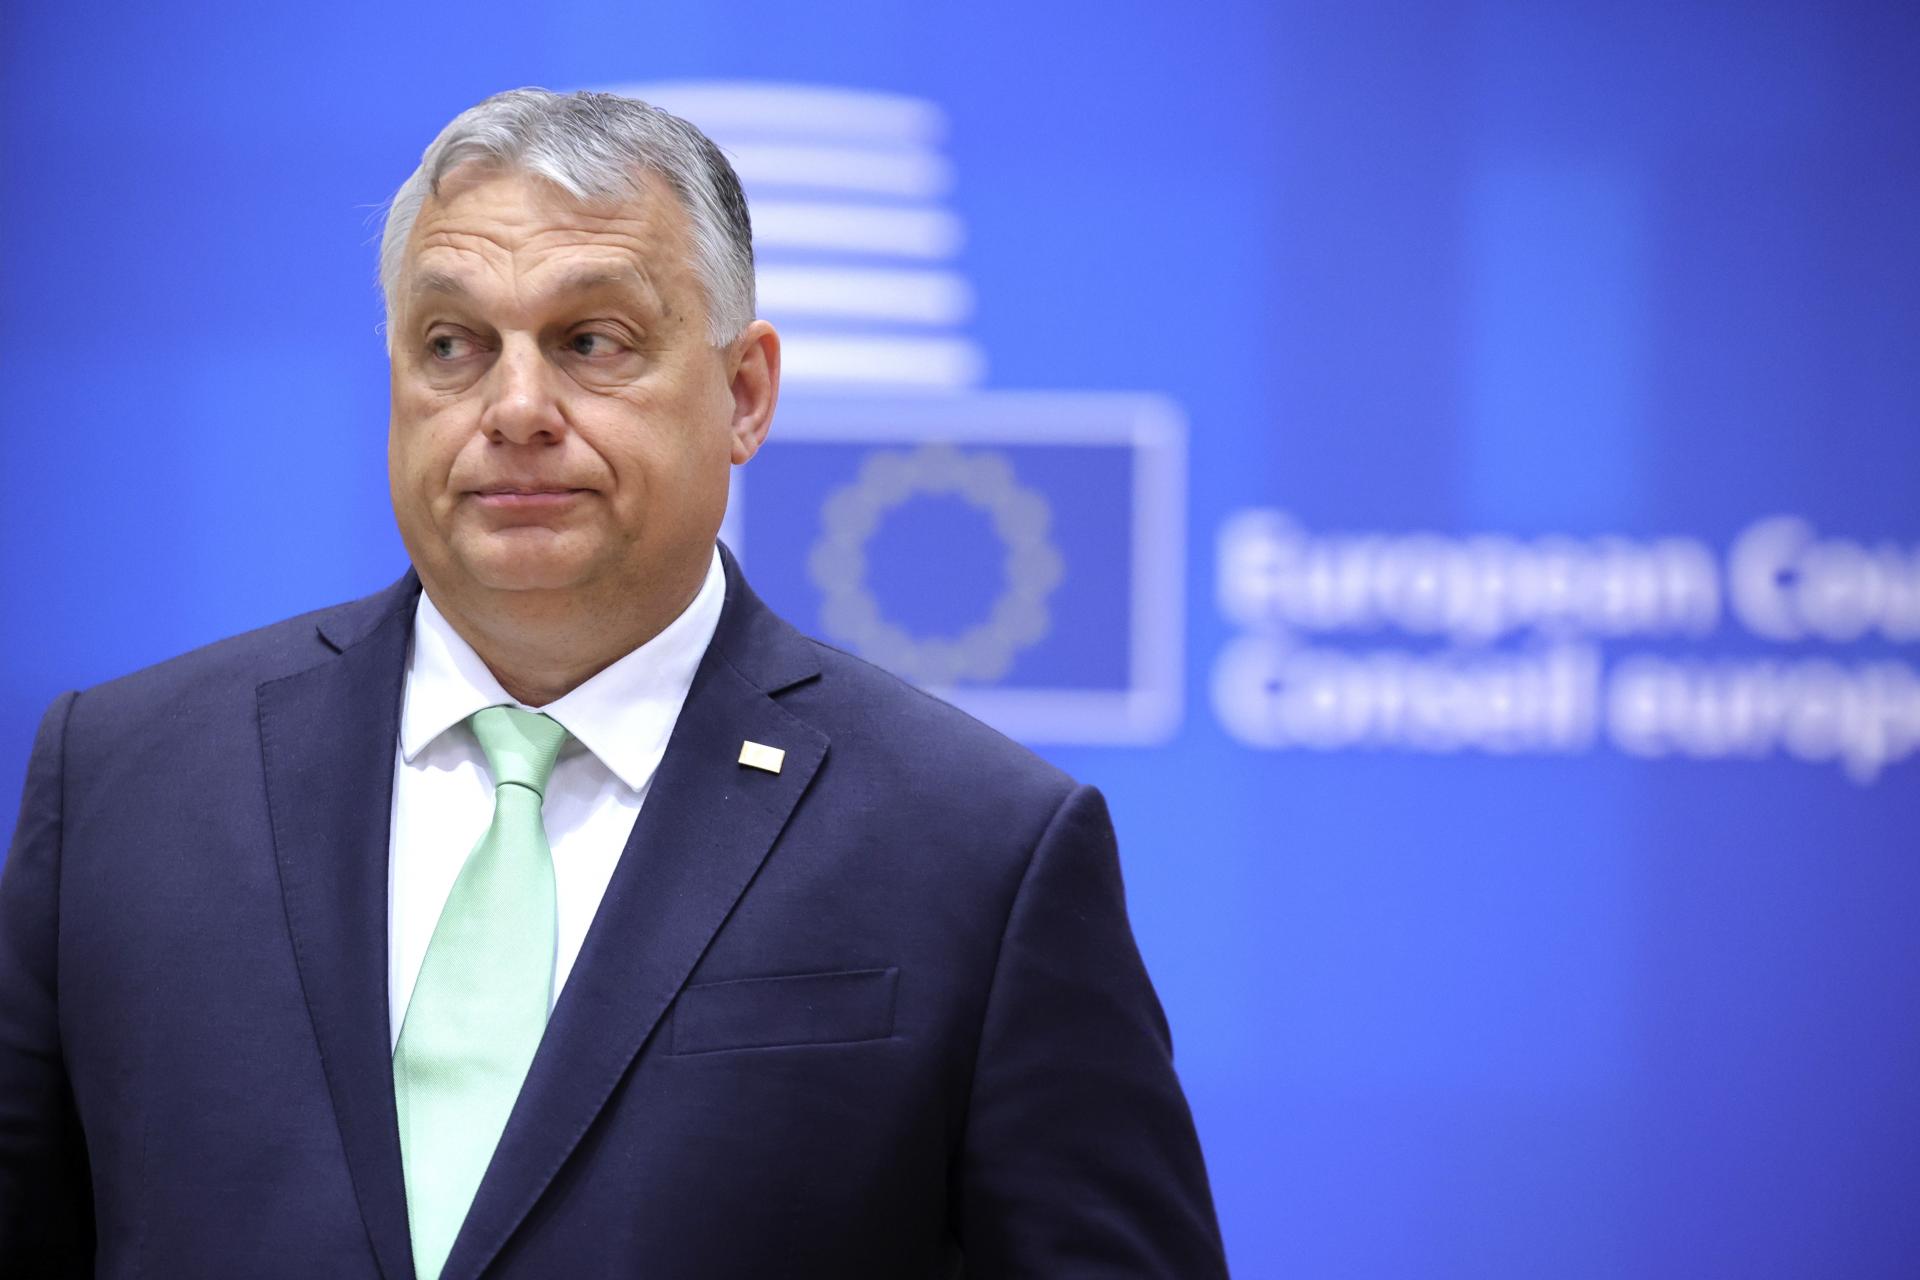 Sankcie USA nie sú namierené proti Maďarsku, hovorí Orbán